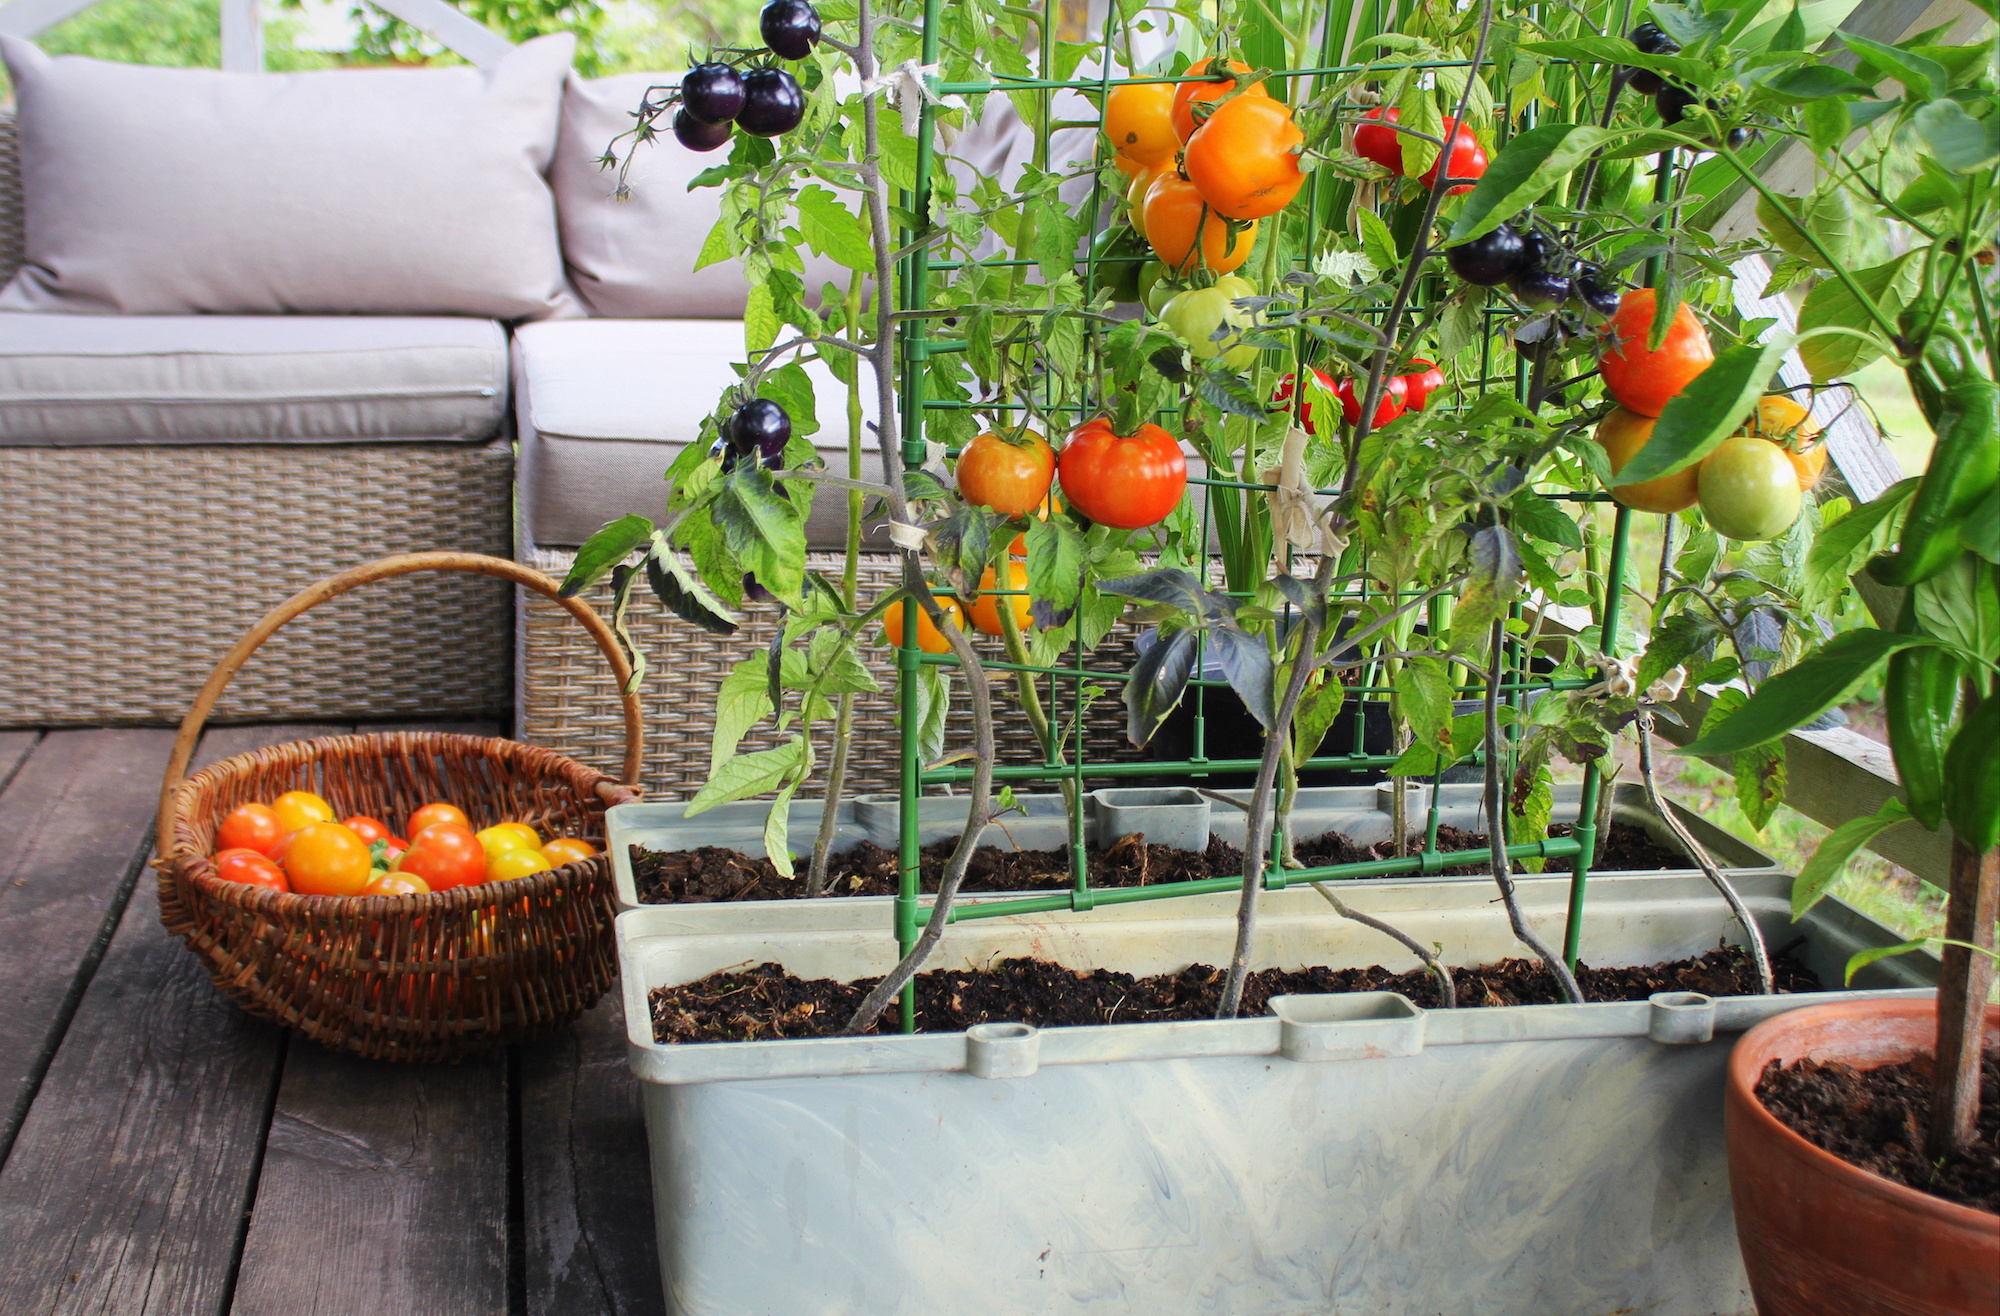 Urban tomato plants on a patio.